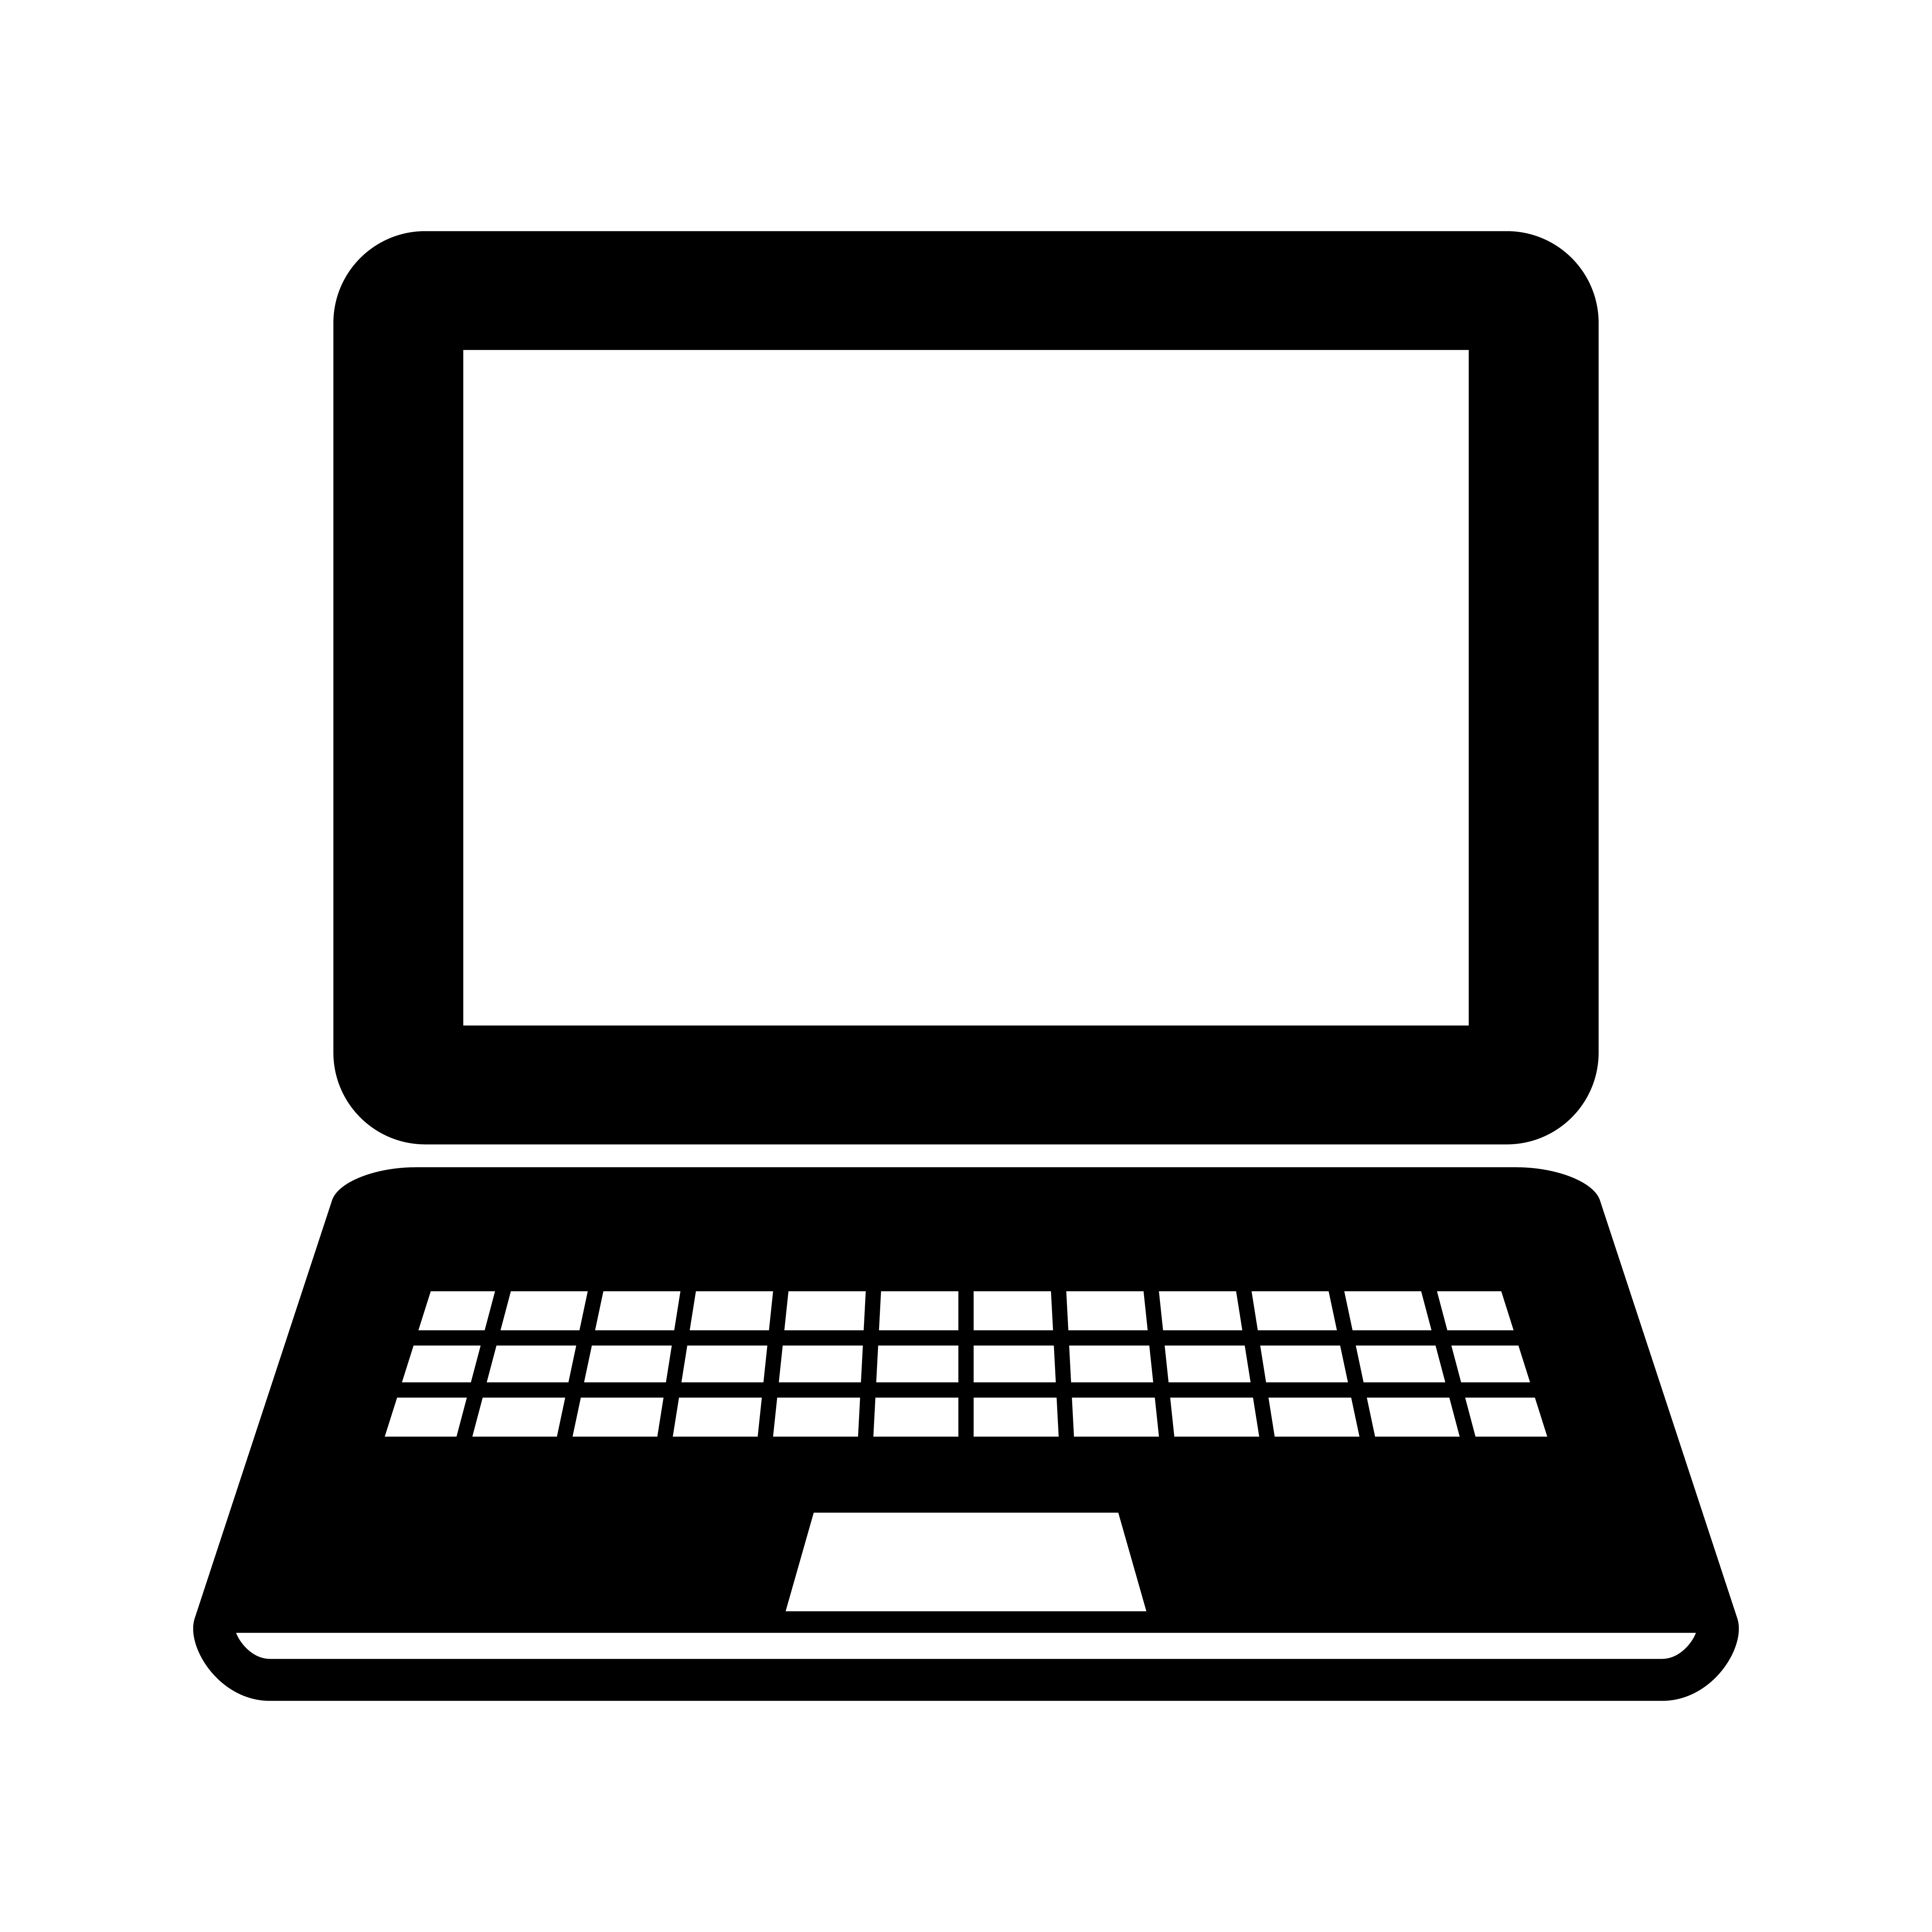 Laptop Computer Vector Icon 551713 Download Free Vectors